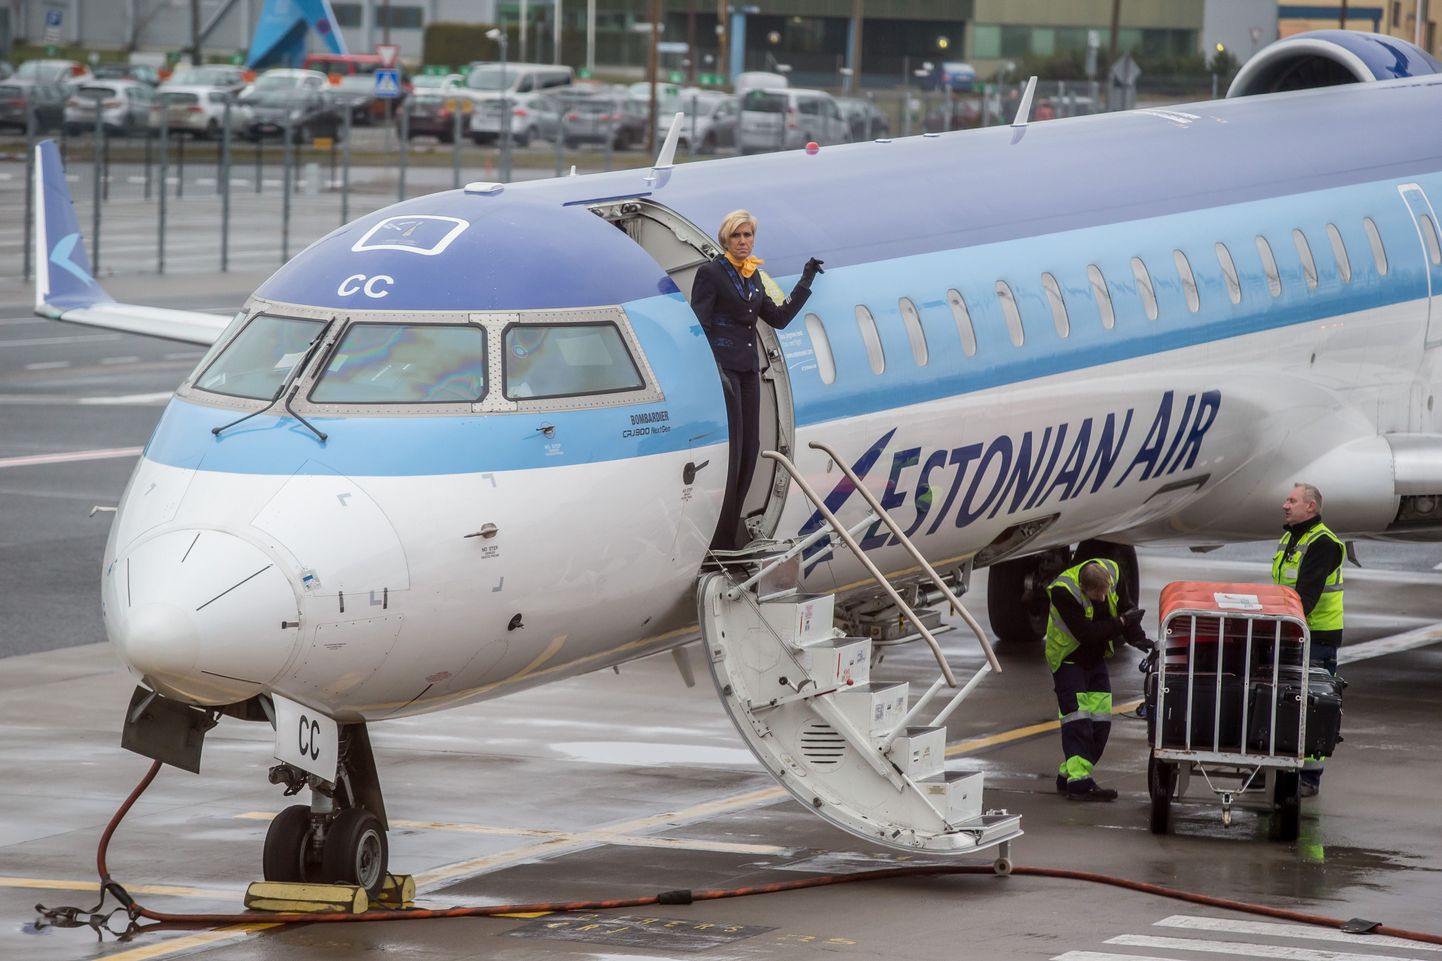 Viimane Tallinna lennujaamast lahkunud Estonian Airi lennuk 7. novembril 2015. aastal